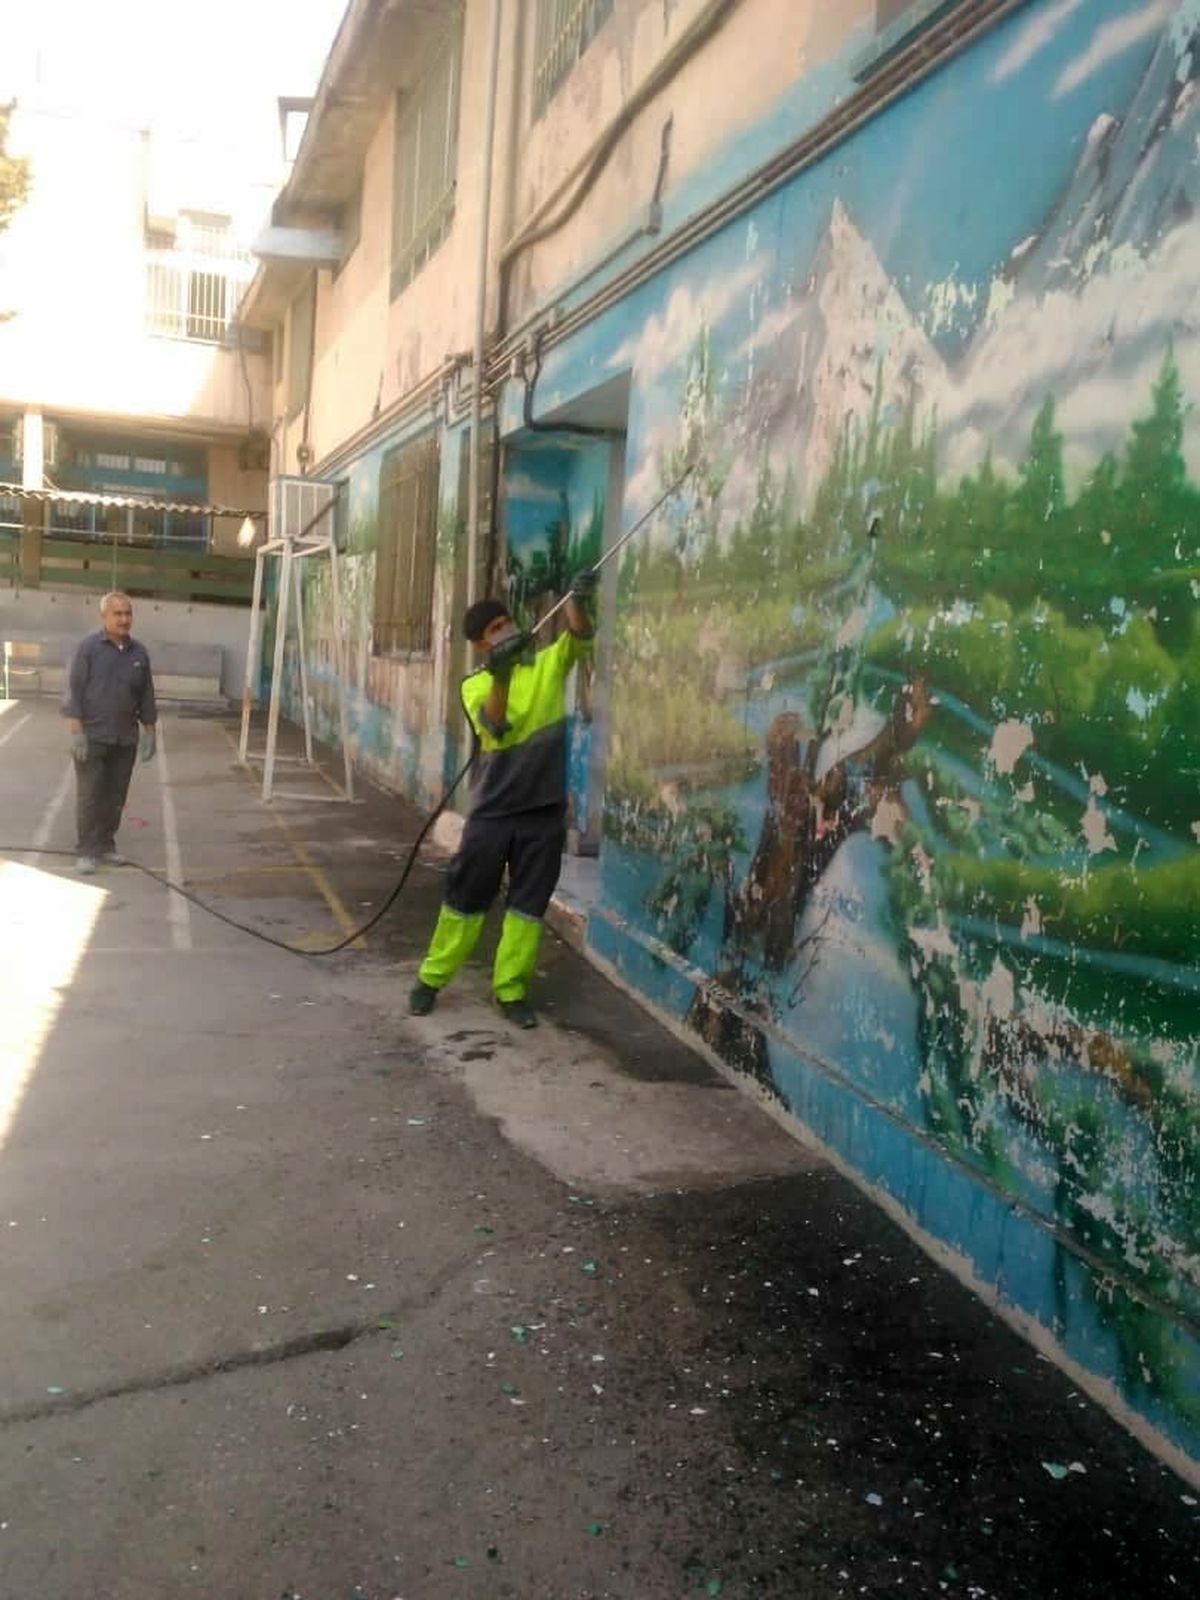 شستشو و پاکسازی نماهای شهری شمال شرق پایتخت